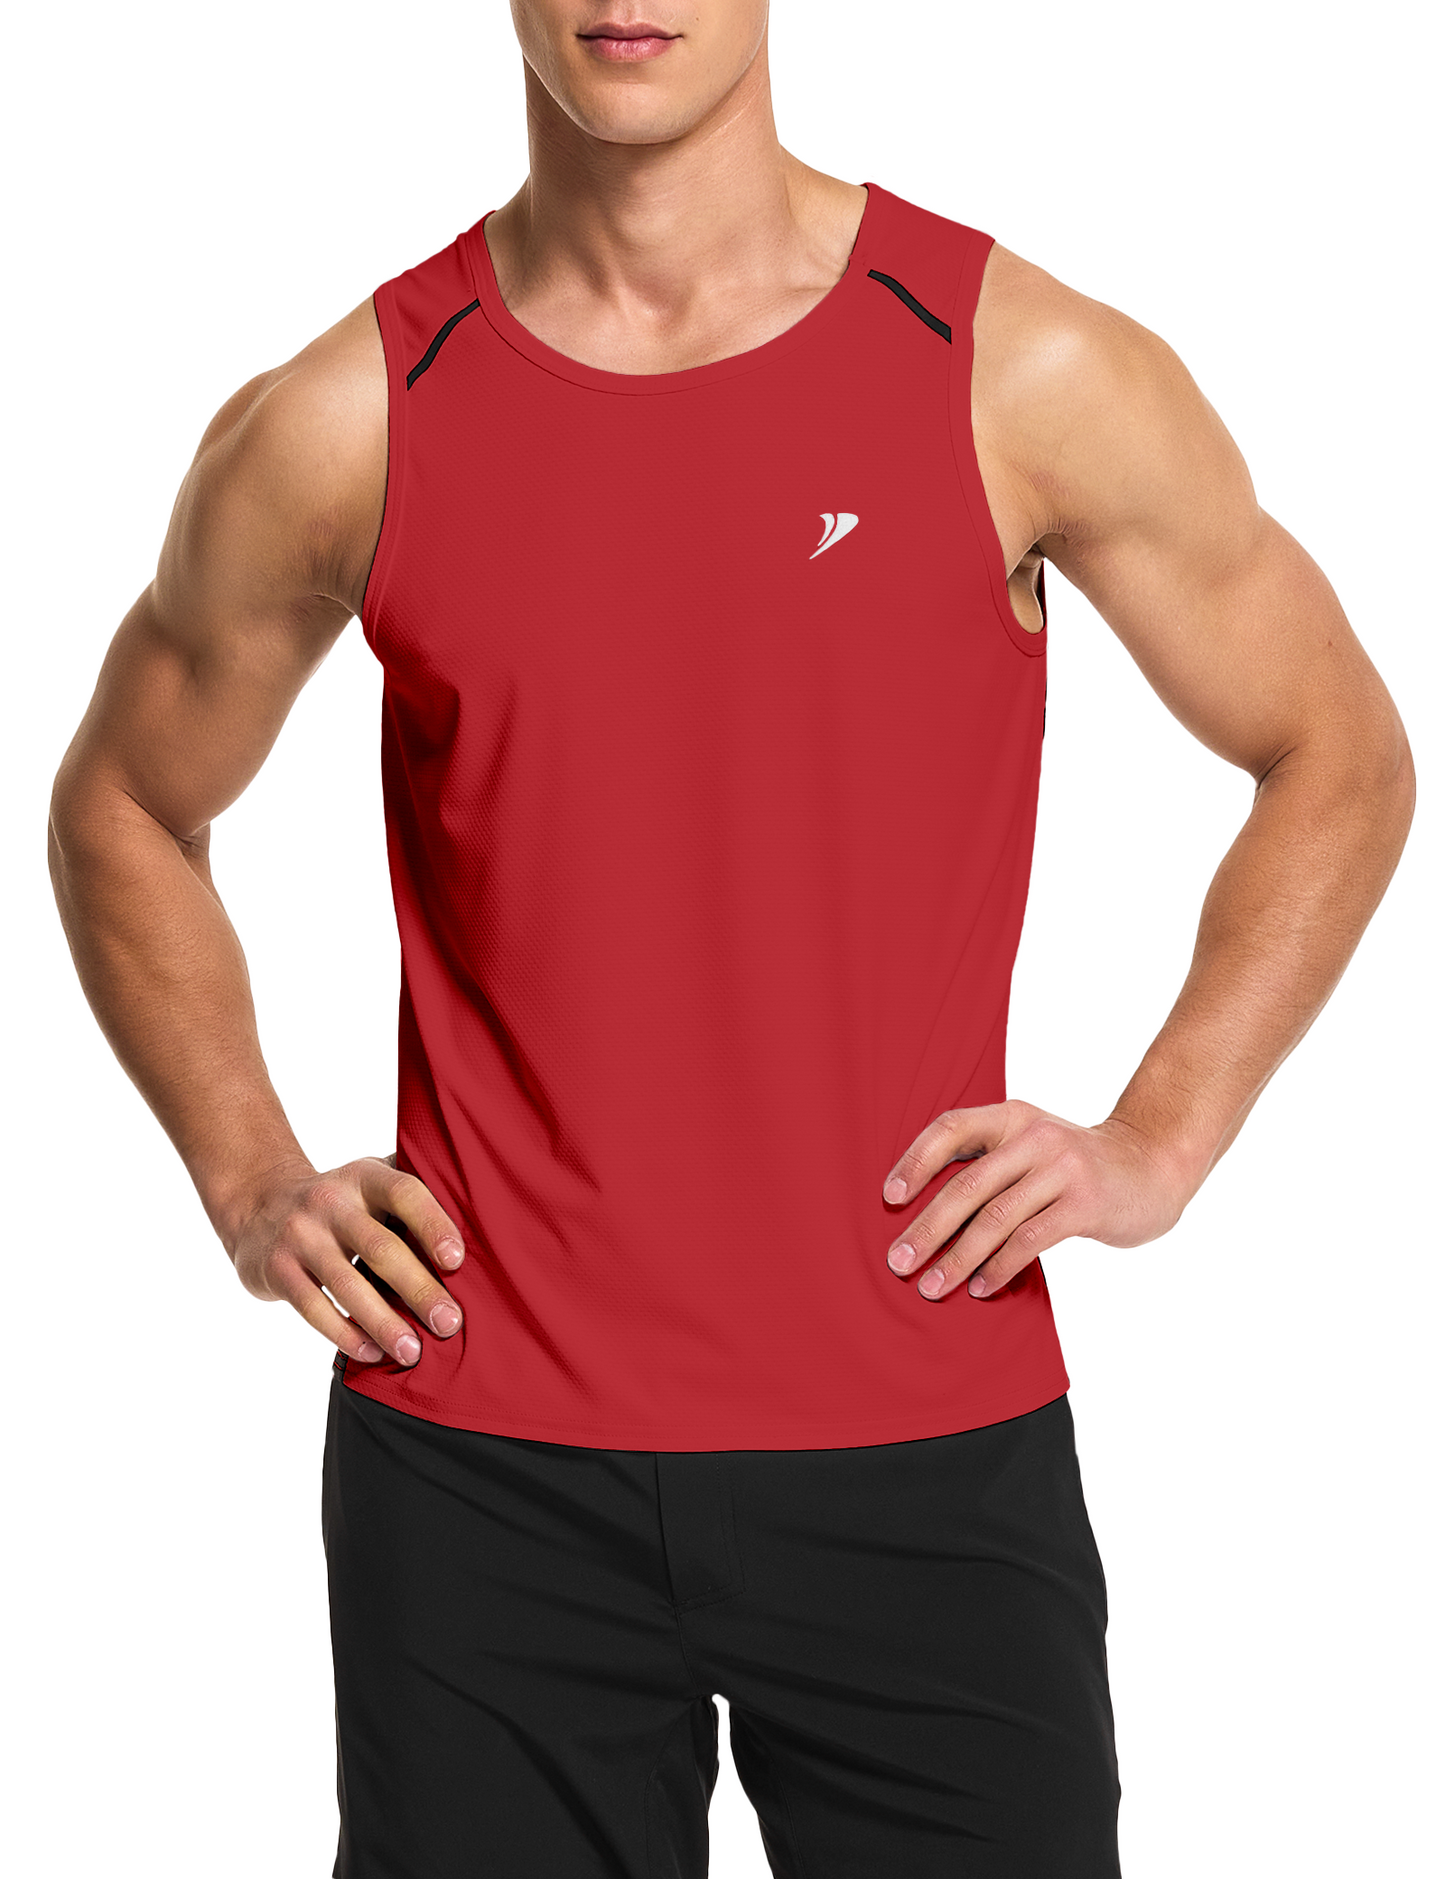 mens running workout gym swim tank top red